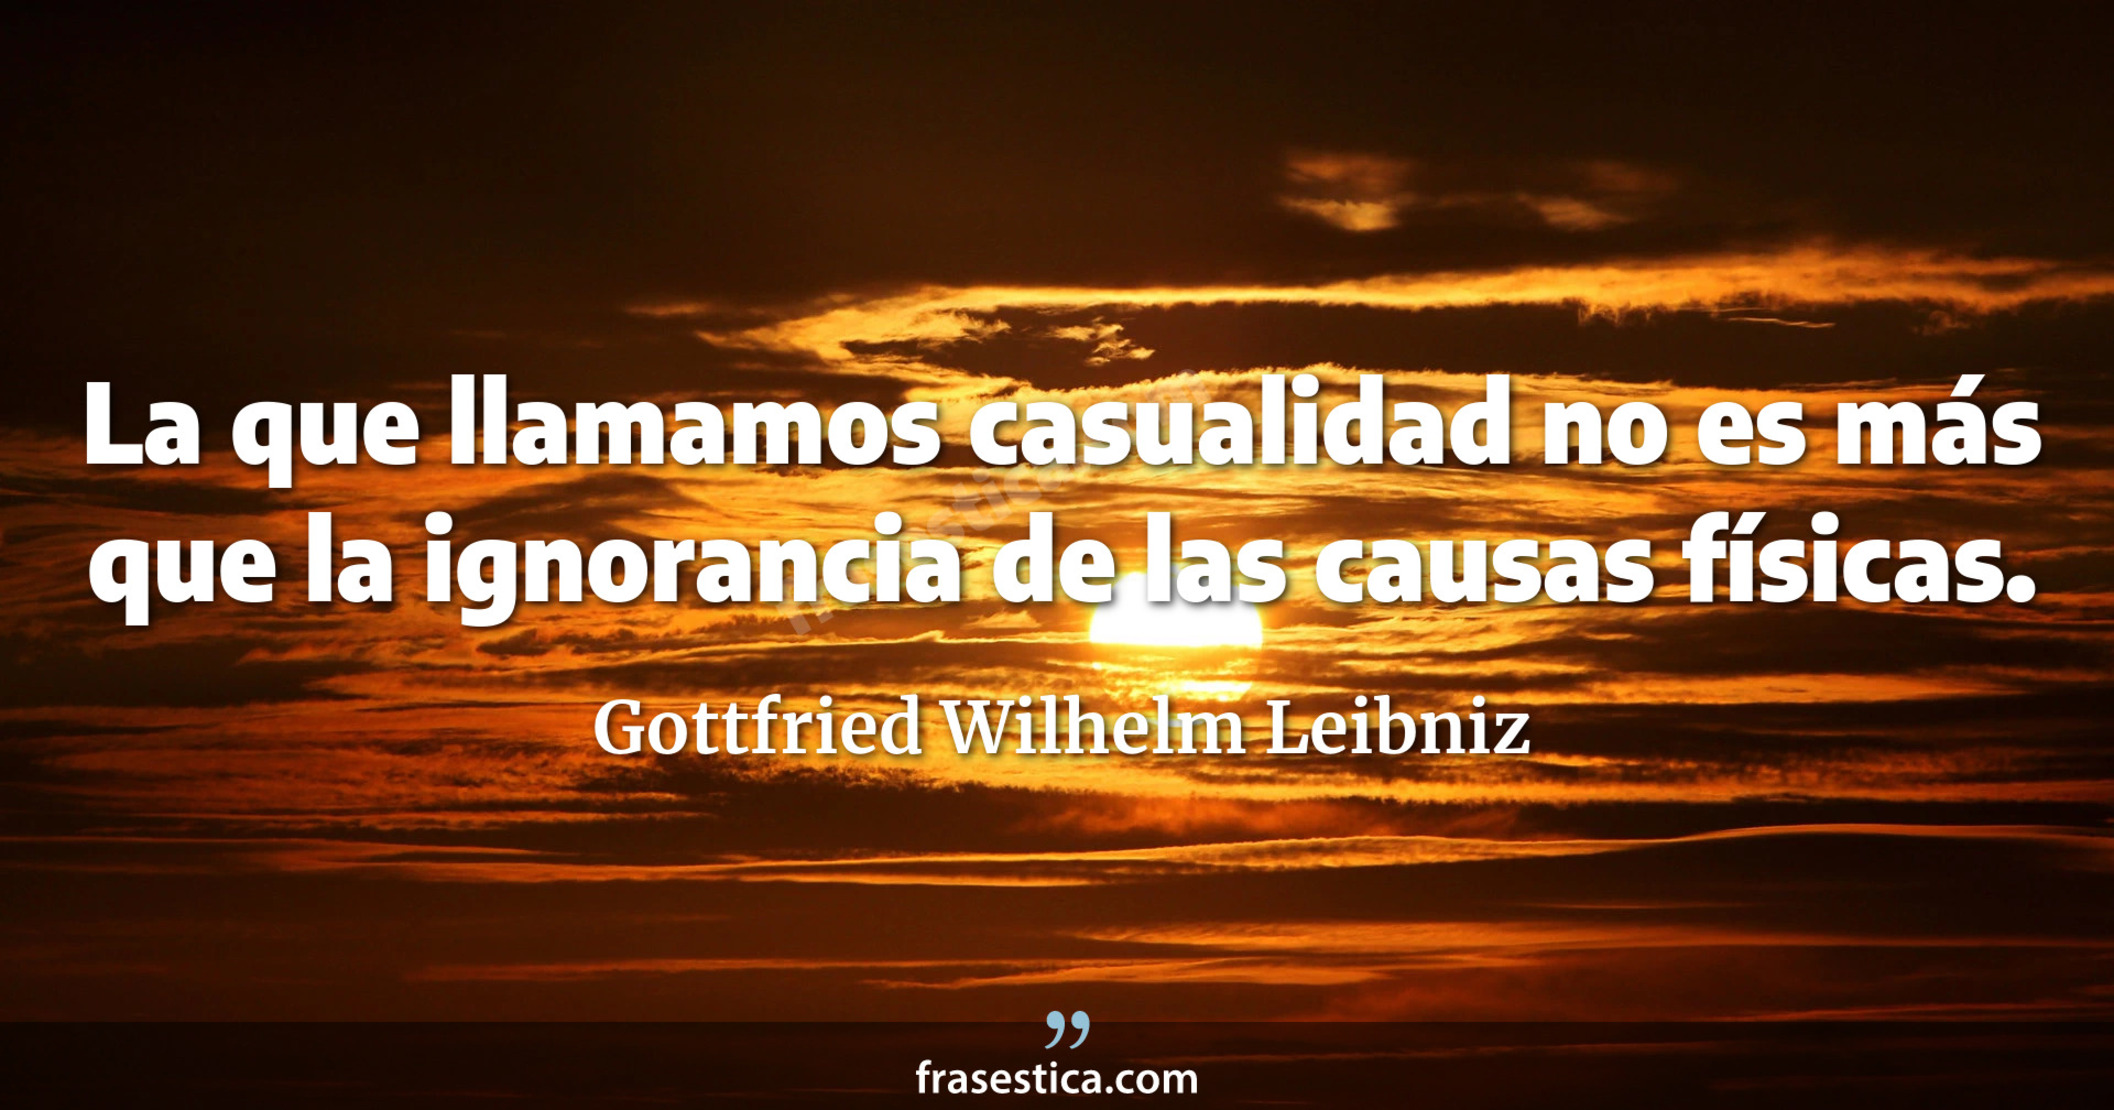 La que llamamos casualidad no es más que la ignorancia de las causas físicas. - Gottfried Wilhelm Leibniz